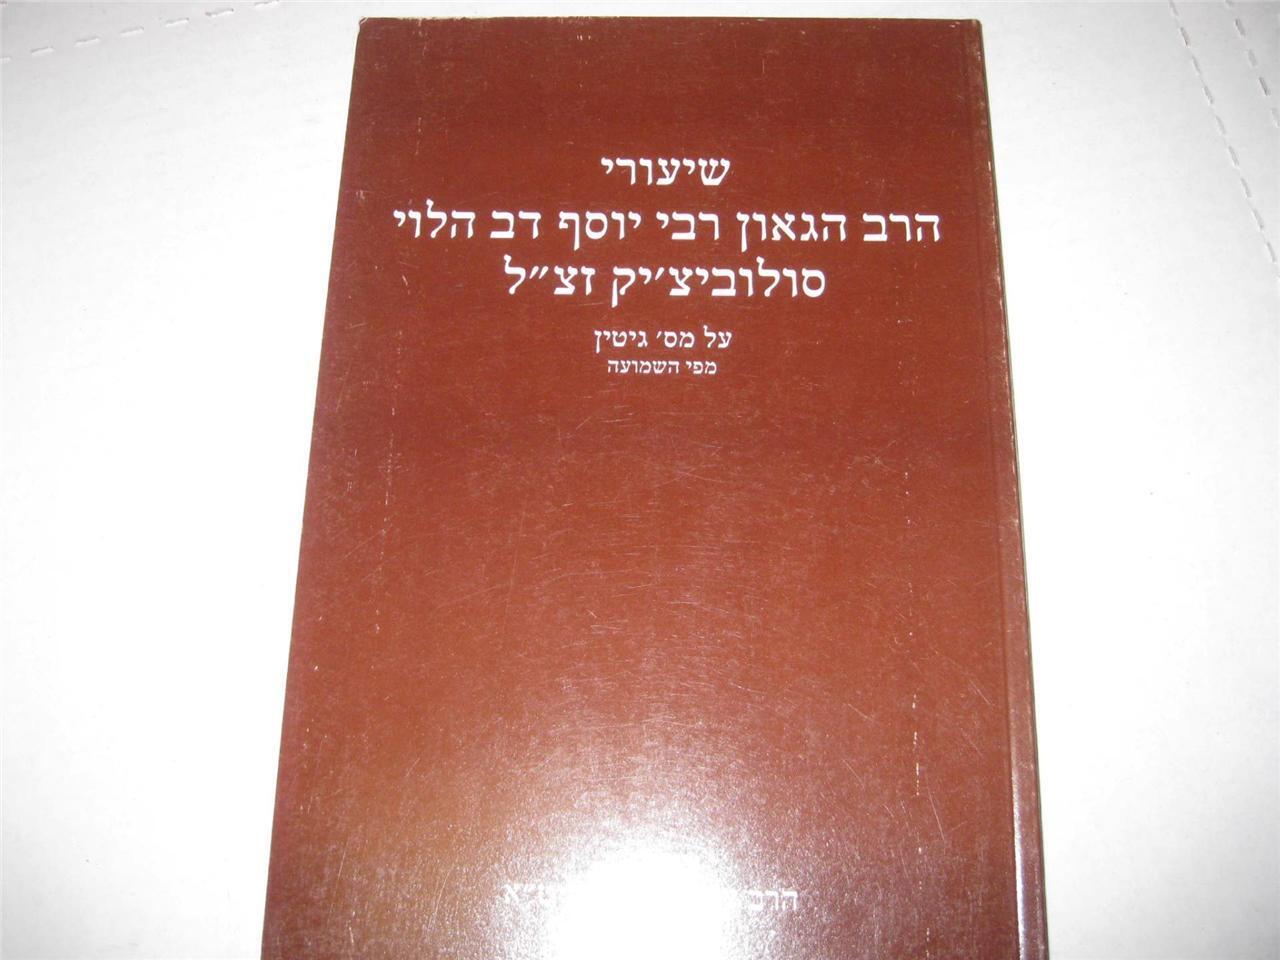 Hebrew Shiure Harav on Masechet GITTIN by THE RAV Joseph B. Soloveitchik